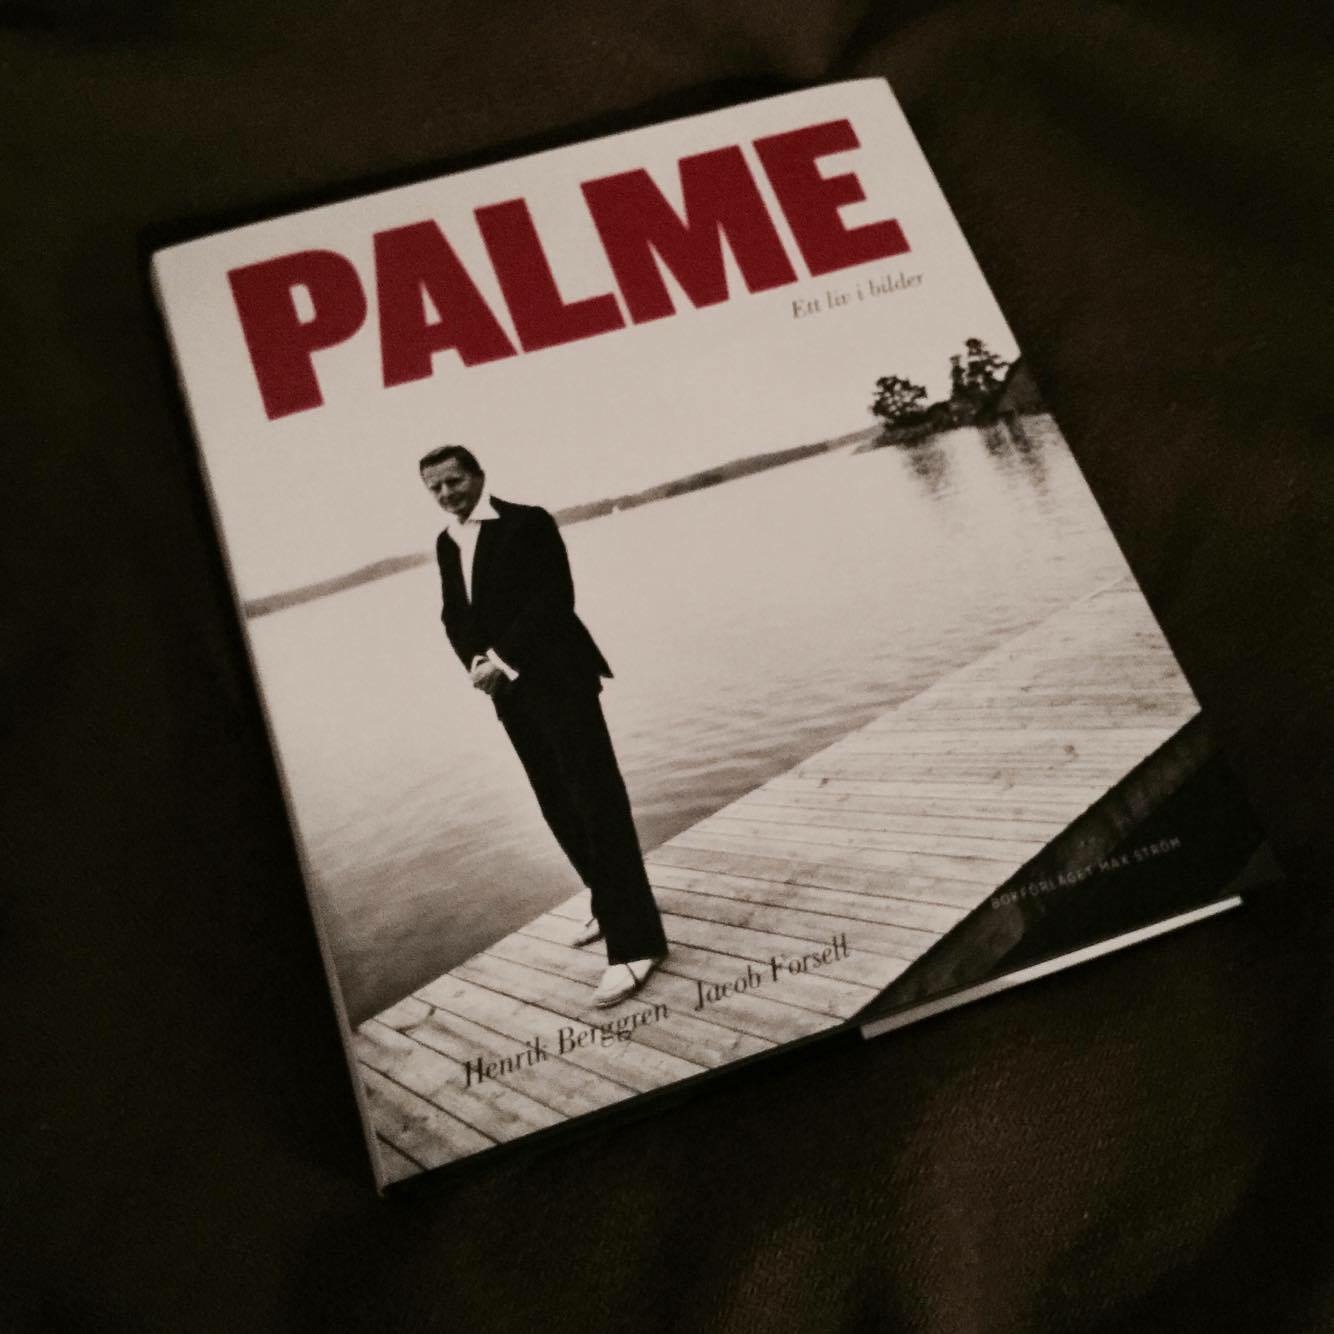 ”Palme. Ett liv i bilder” av Henrik Berggren och Jacob Forsell (Max Ström)